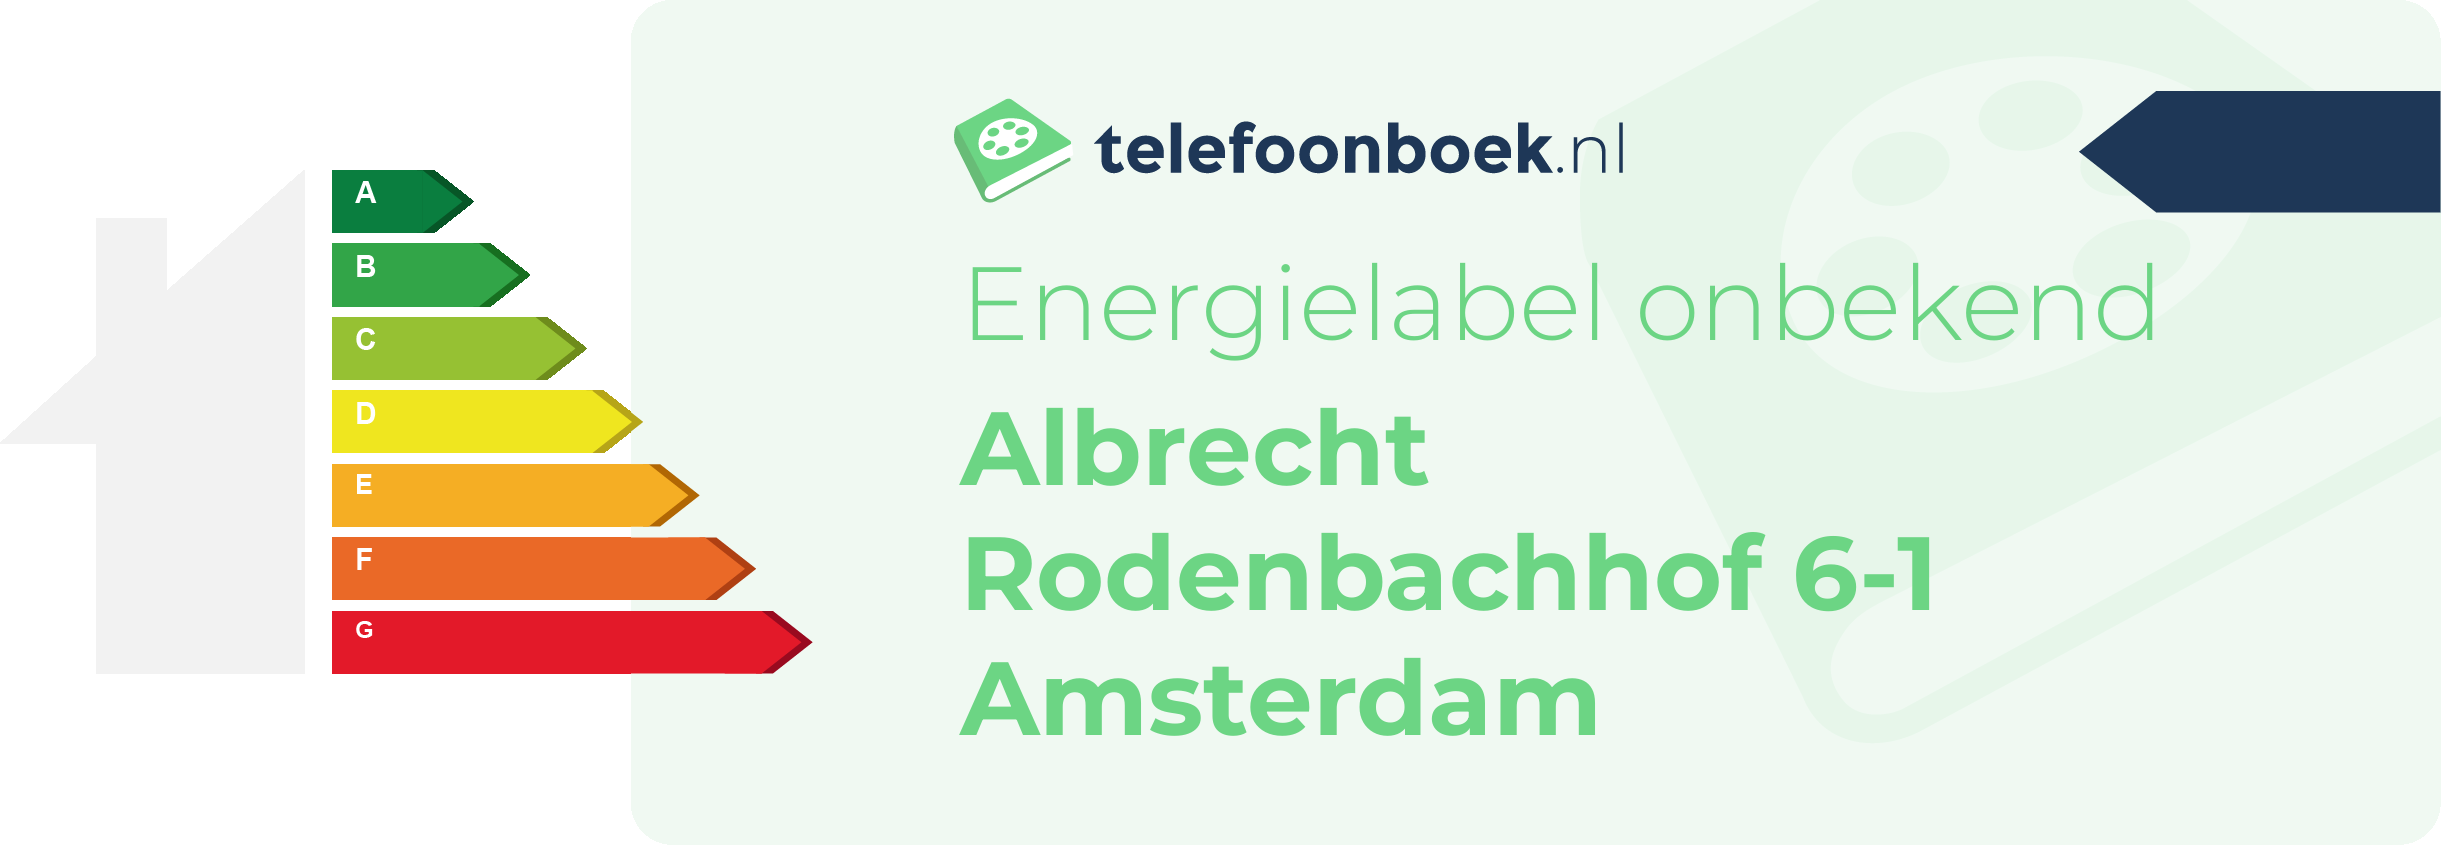 Energielabel Albrecht Rodenbachhof 6-1 Amsterdam